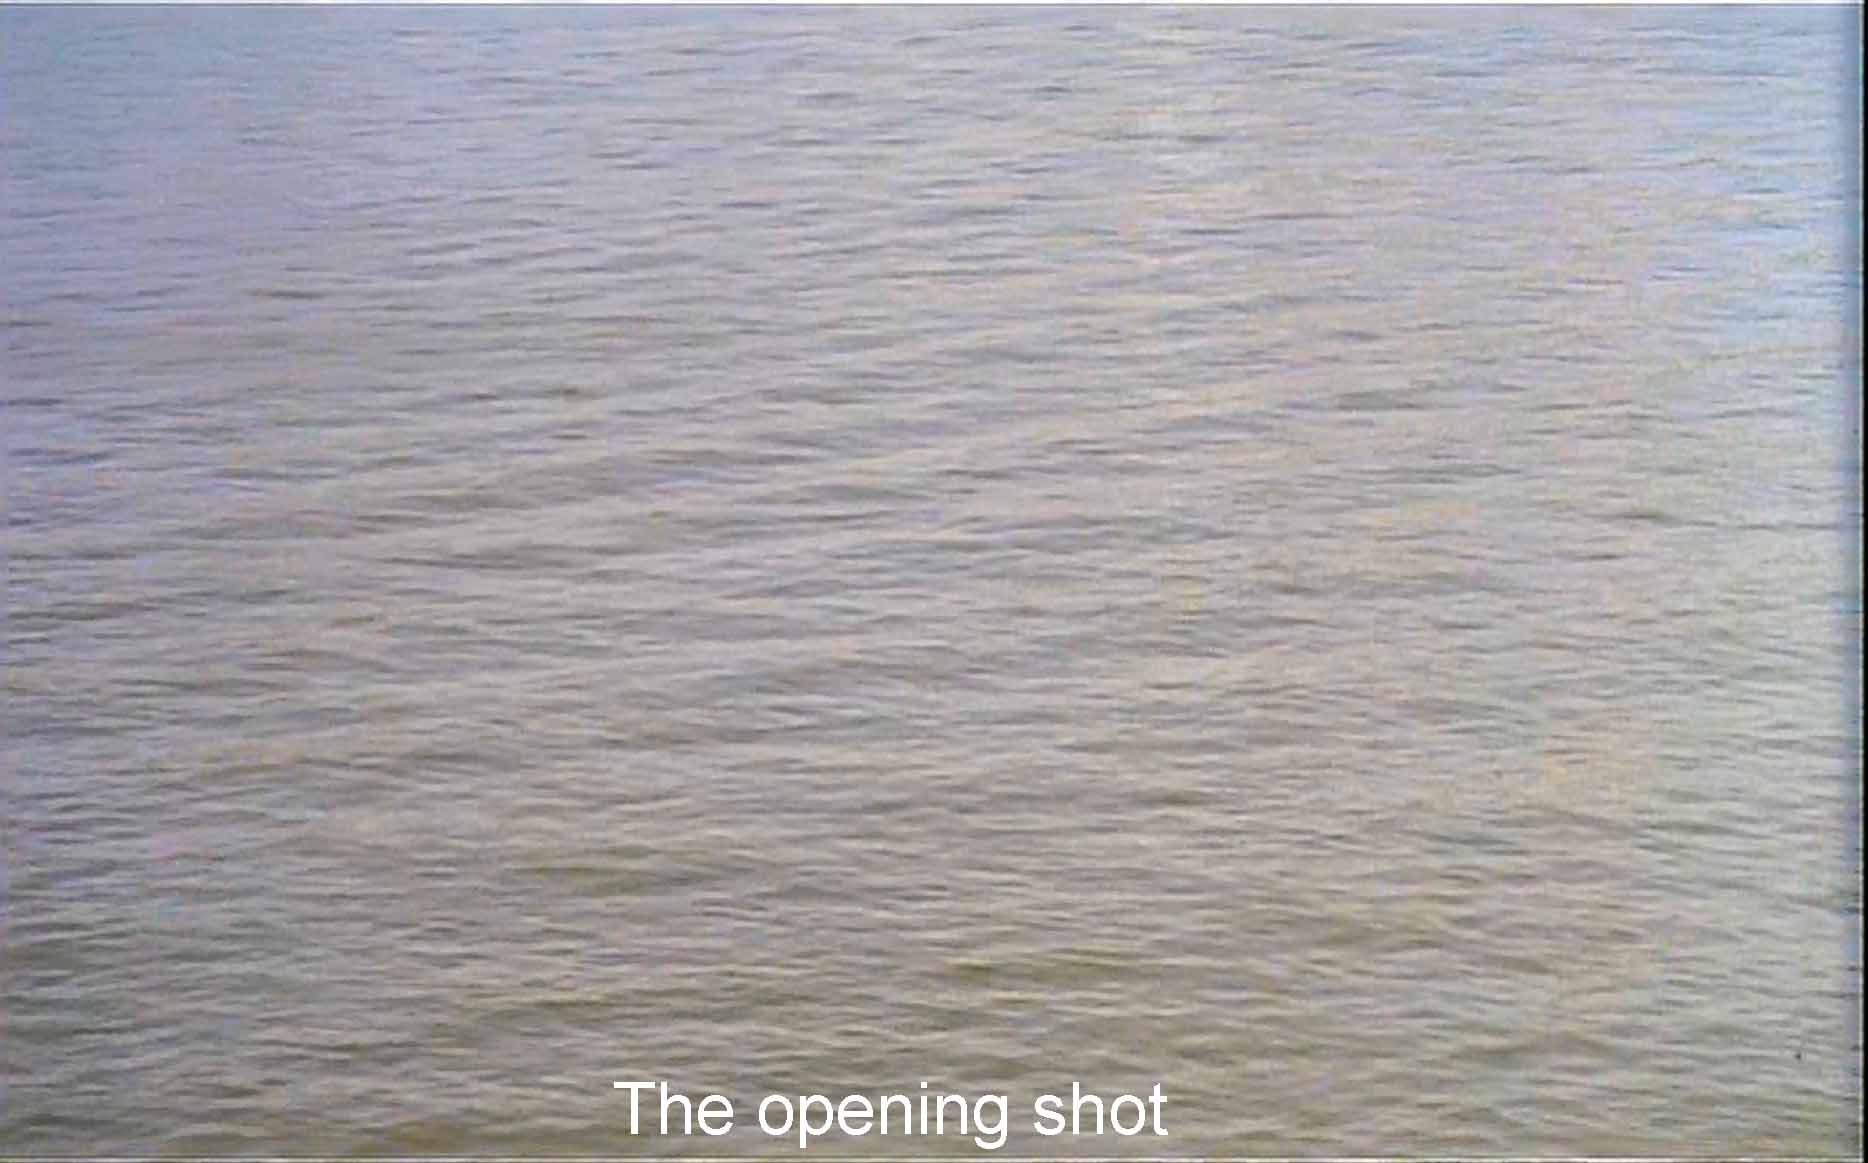 Opening shot